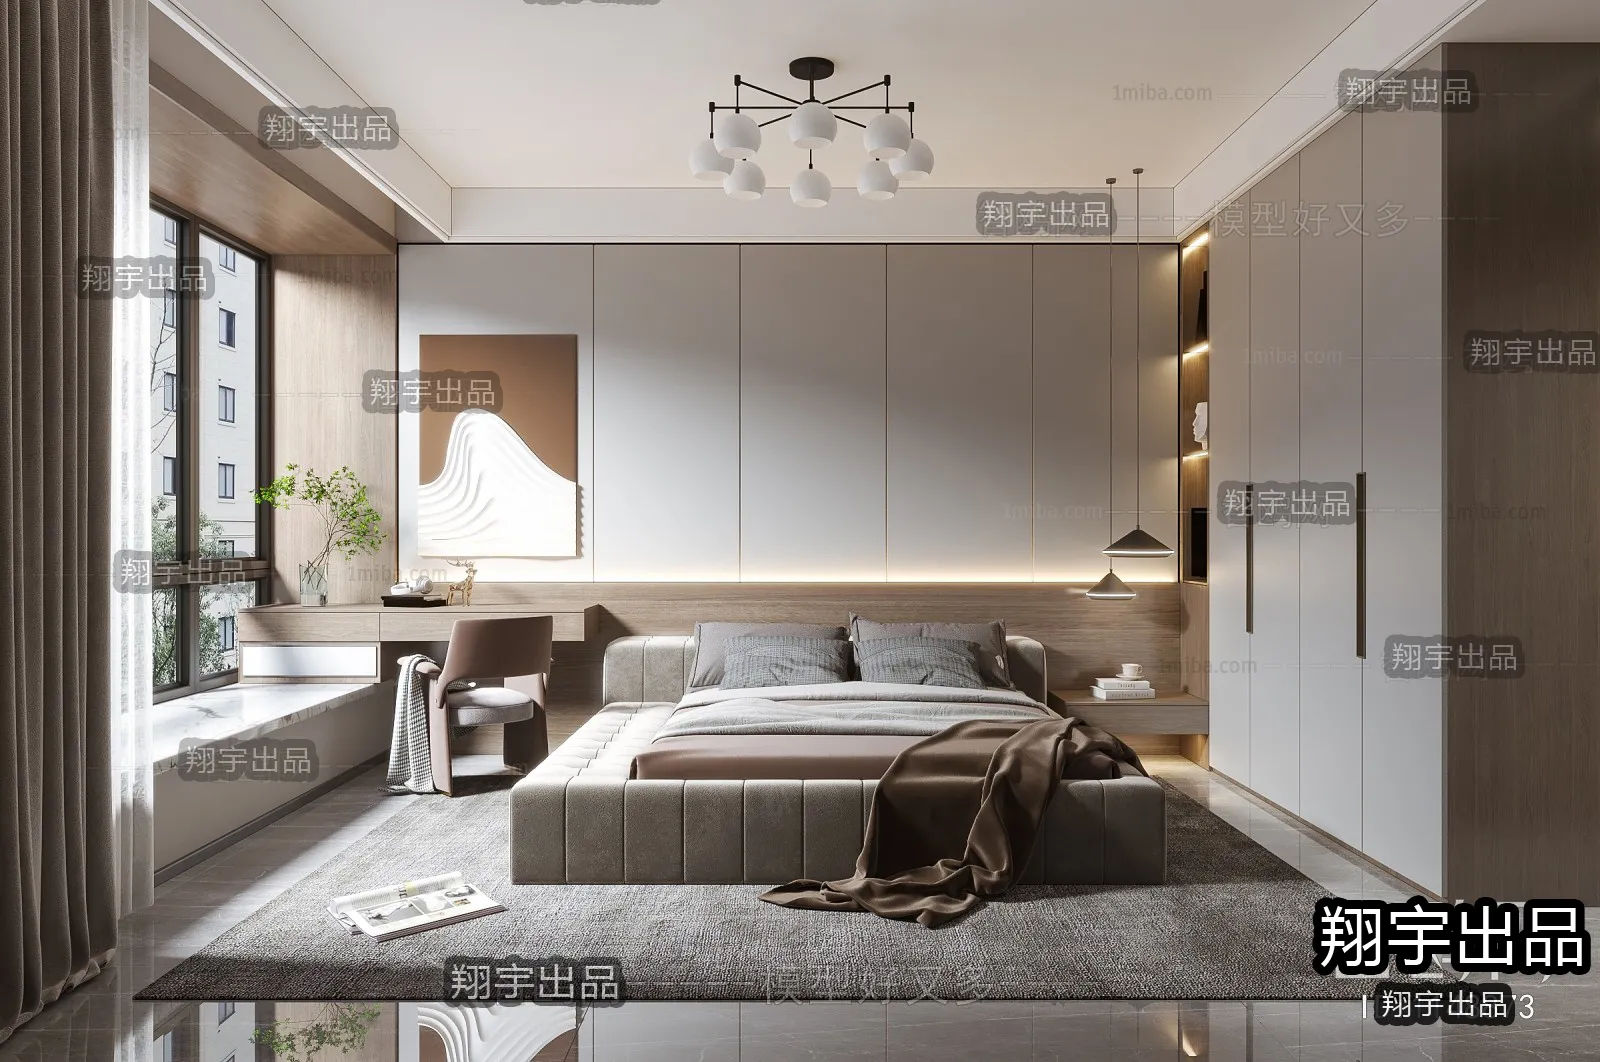 Bedroom – Modern Interior Design – 3D Models – 002